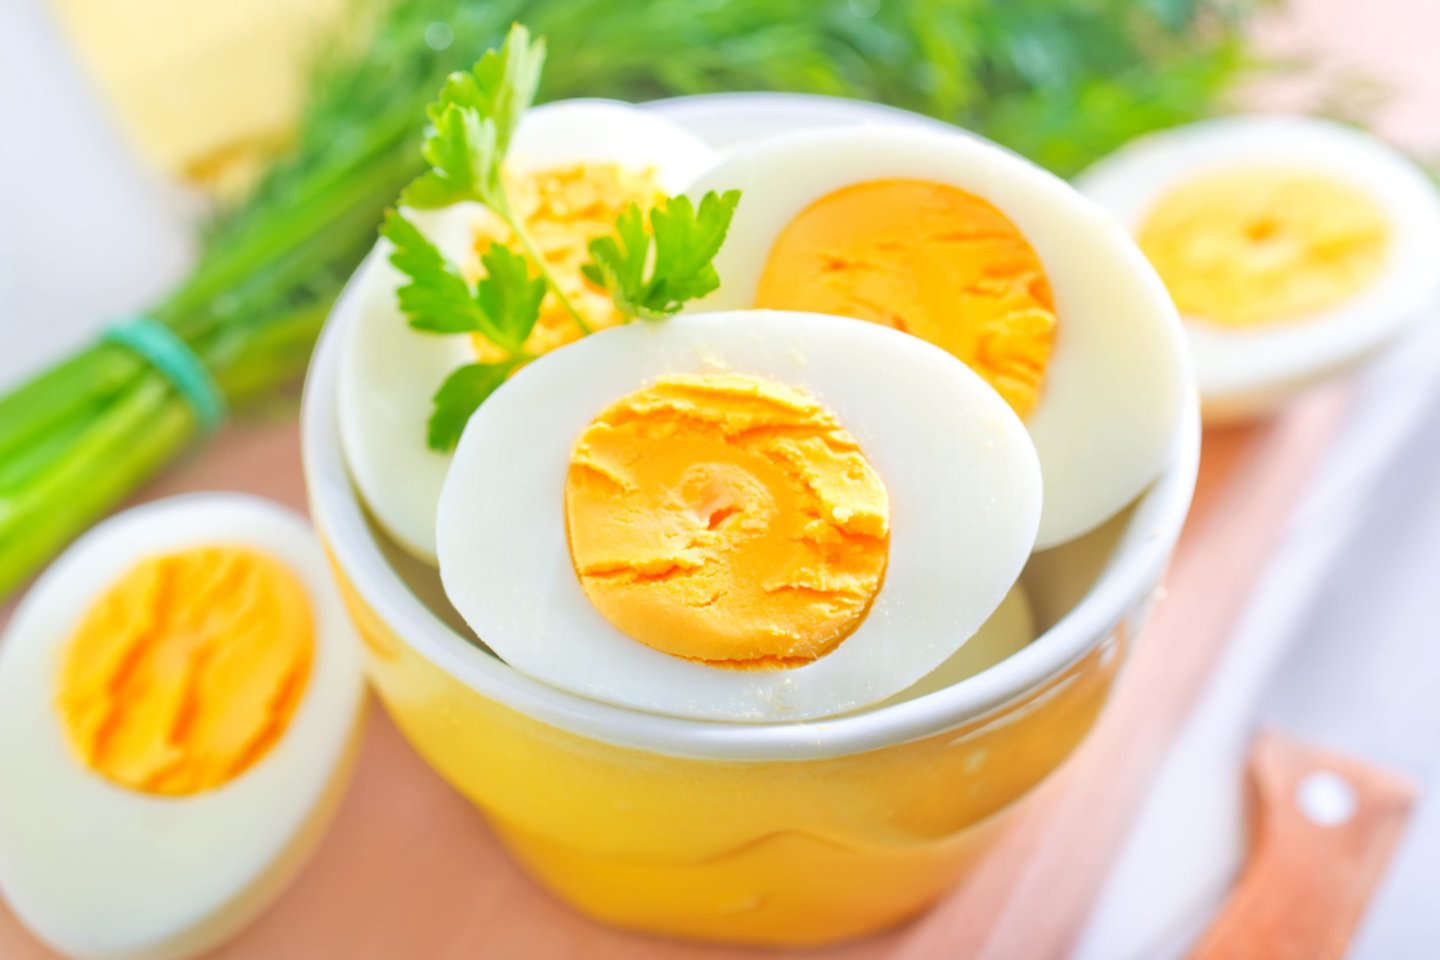  Kiaušiniai gali būti vadinami super maistu dėl visaverčių baltymų ir plataus maistinių savybių spektro. 